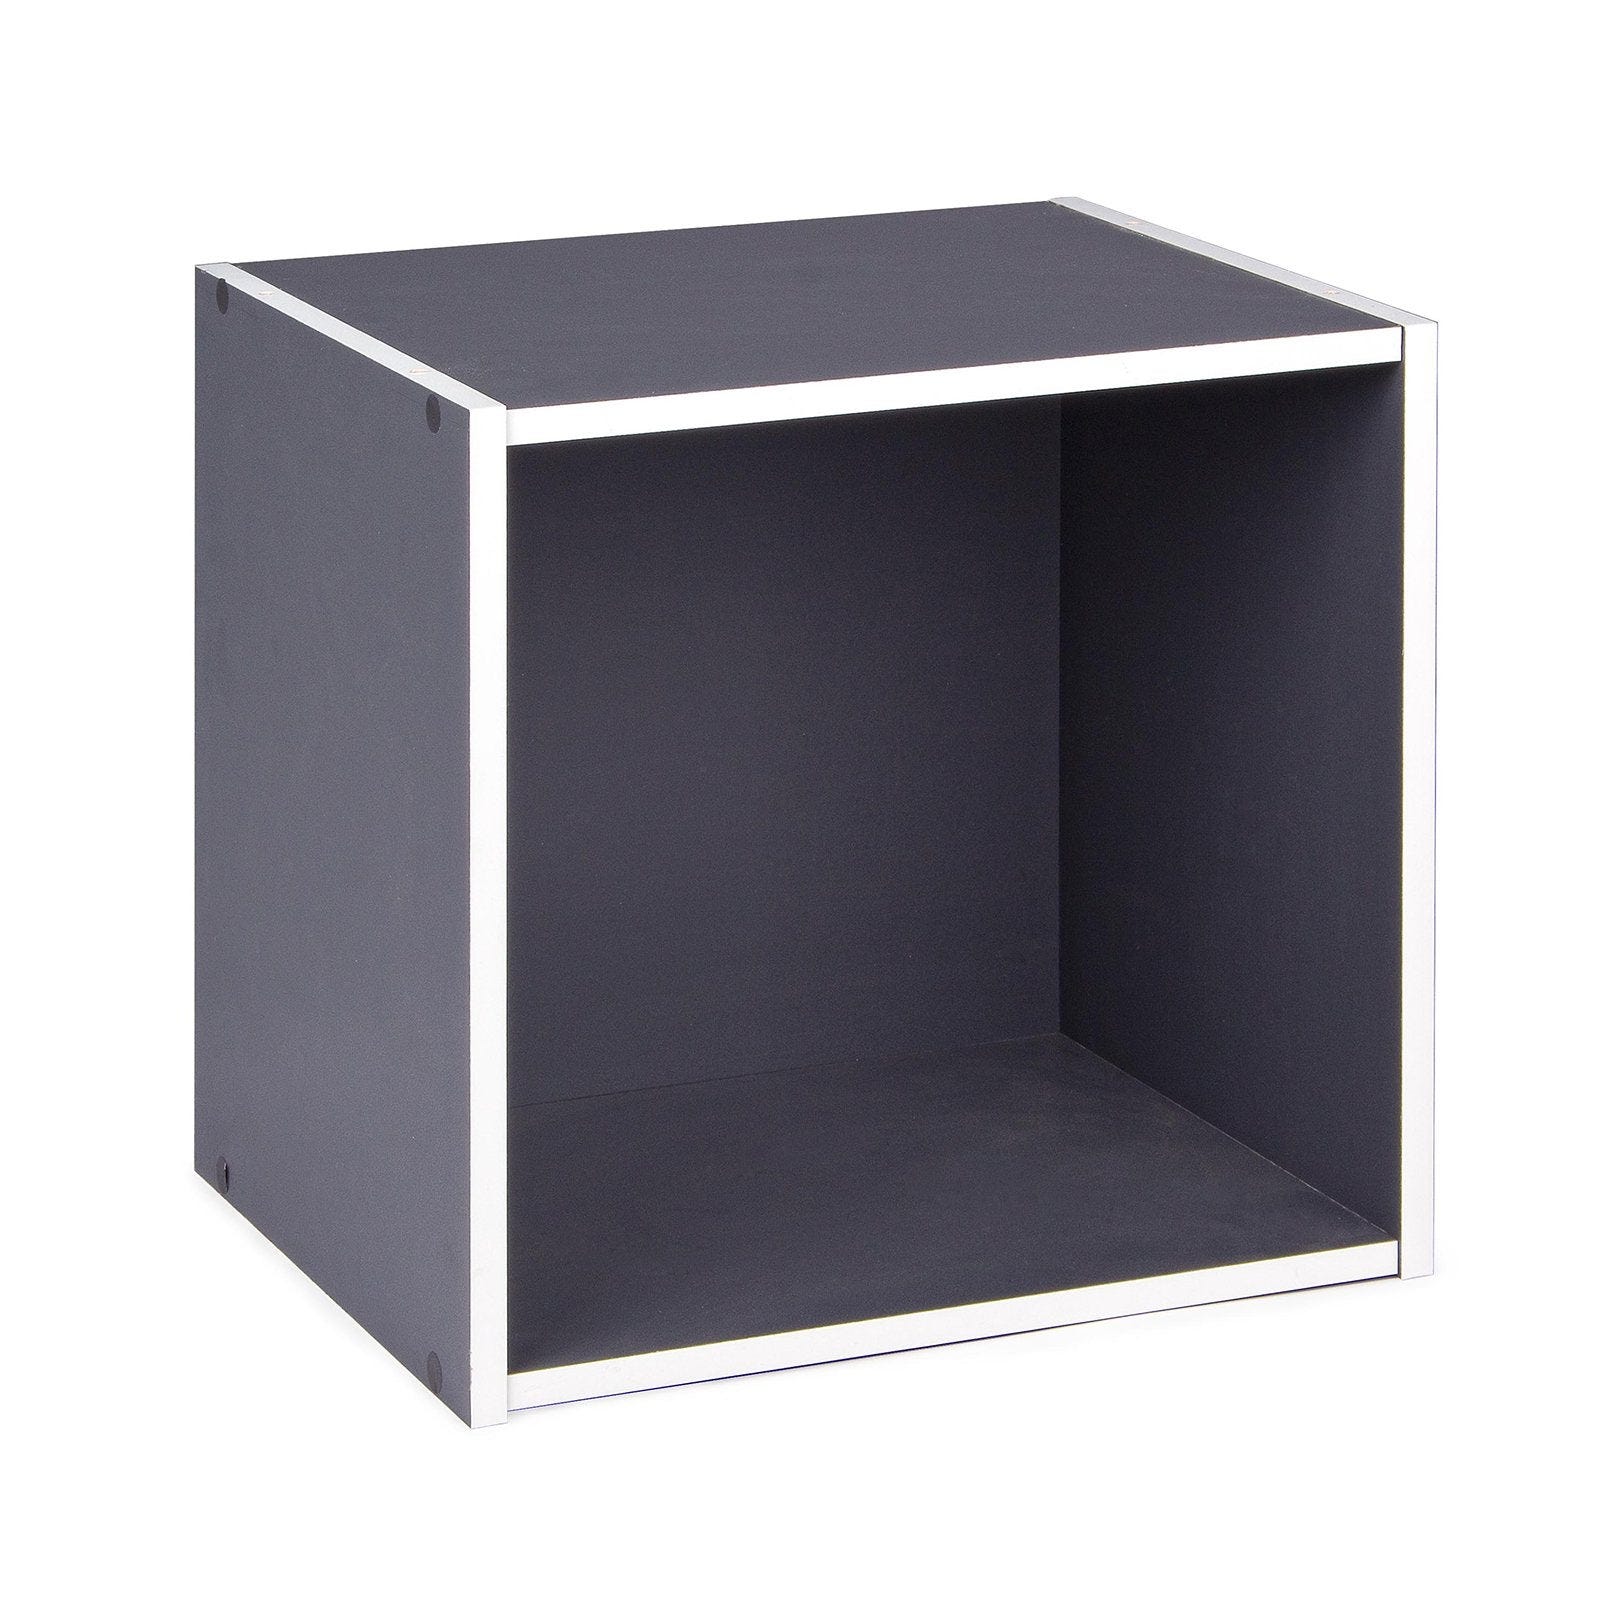 Cubo mensola 35 cm componibile a libreria arredamento moderno / Cubo con  anta / Blu